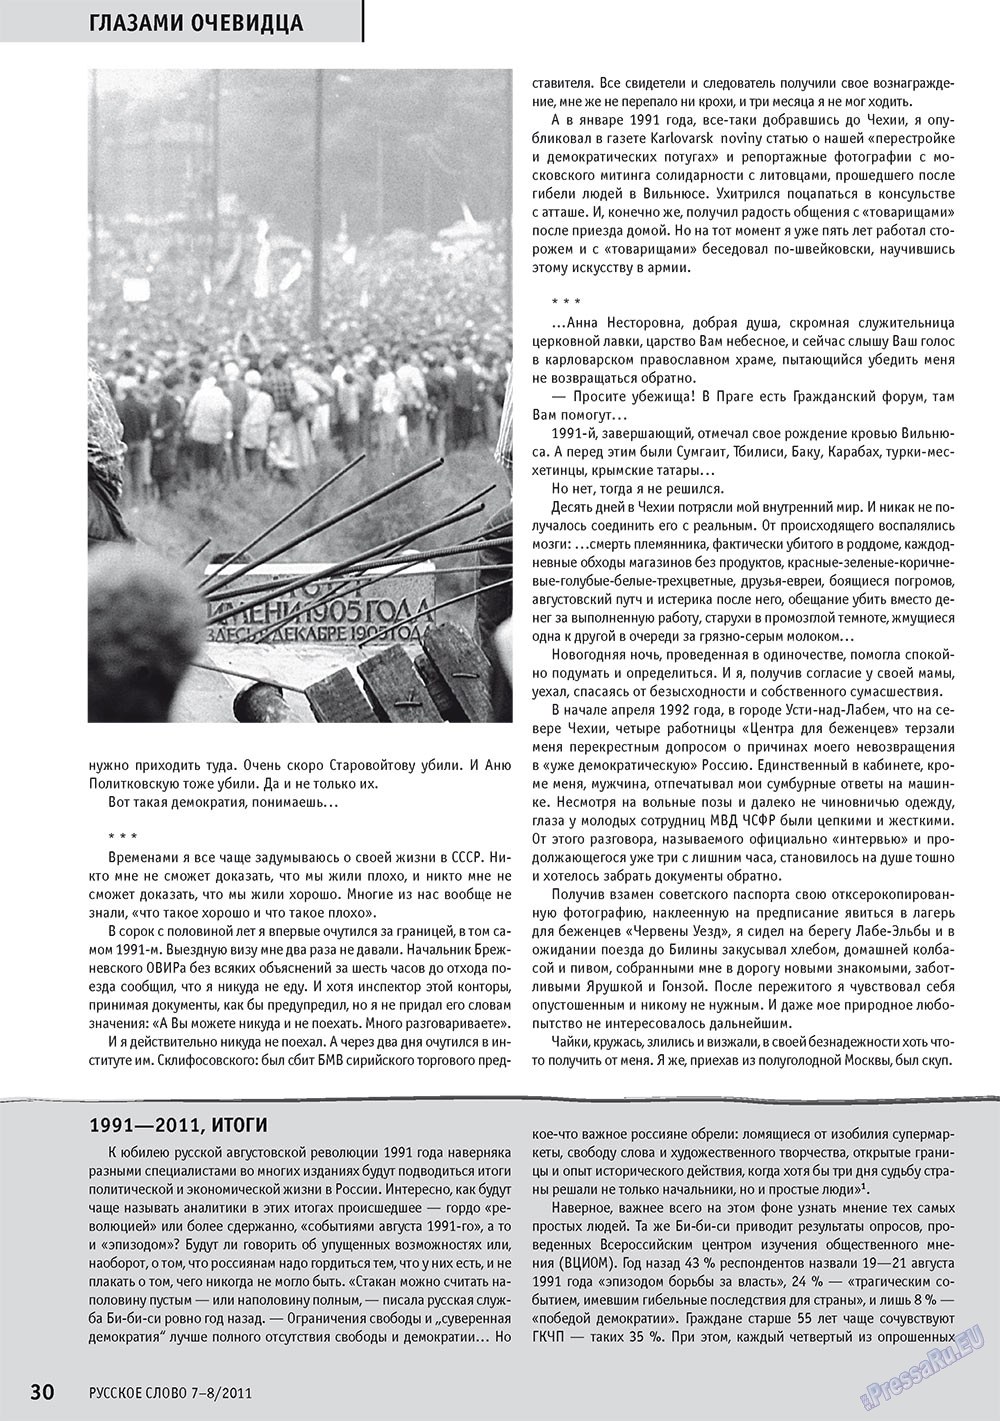 Русское слово, журнал. 2011 №7 стр.32